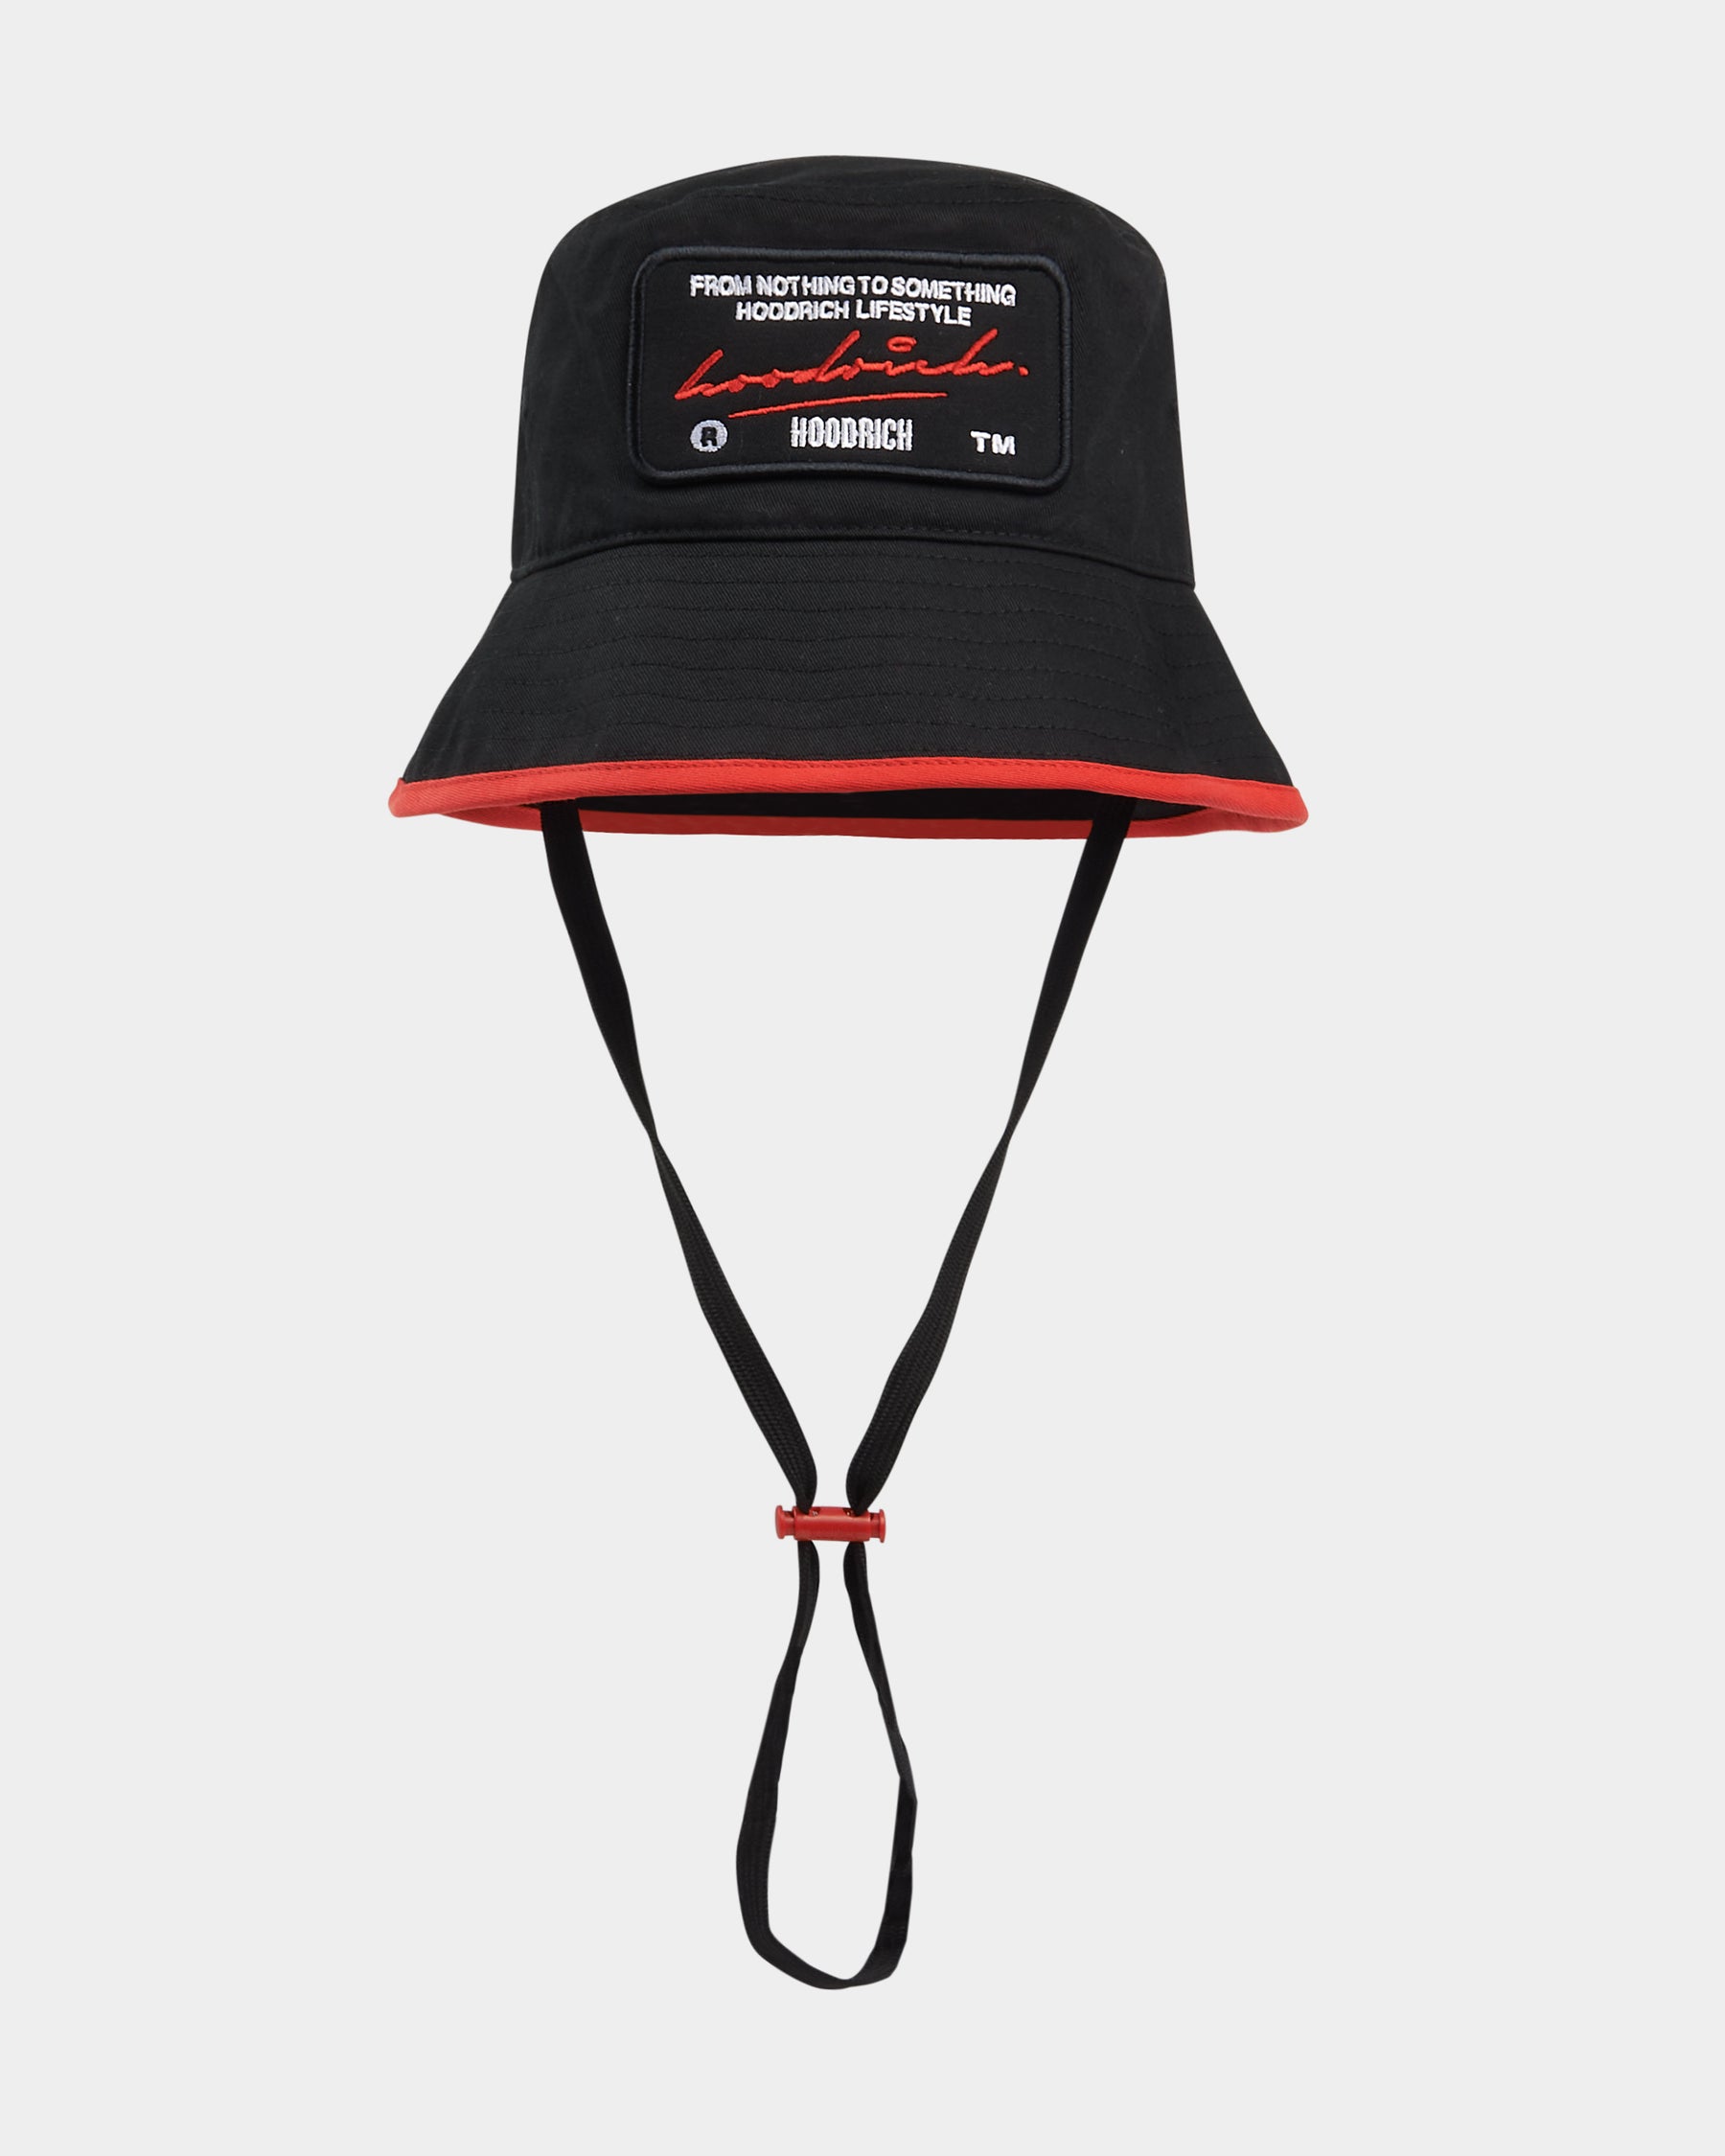 OG Cruzade Bucket Hat - Black/White/Red